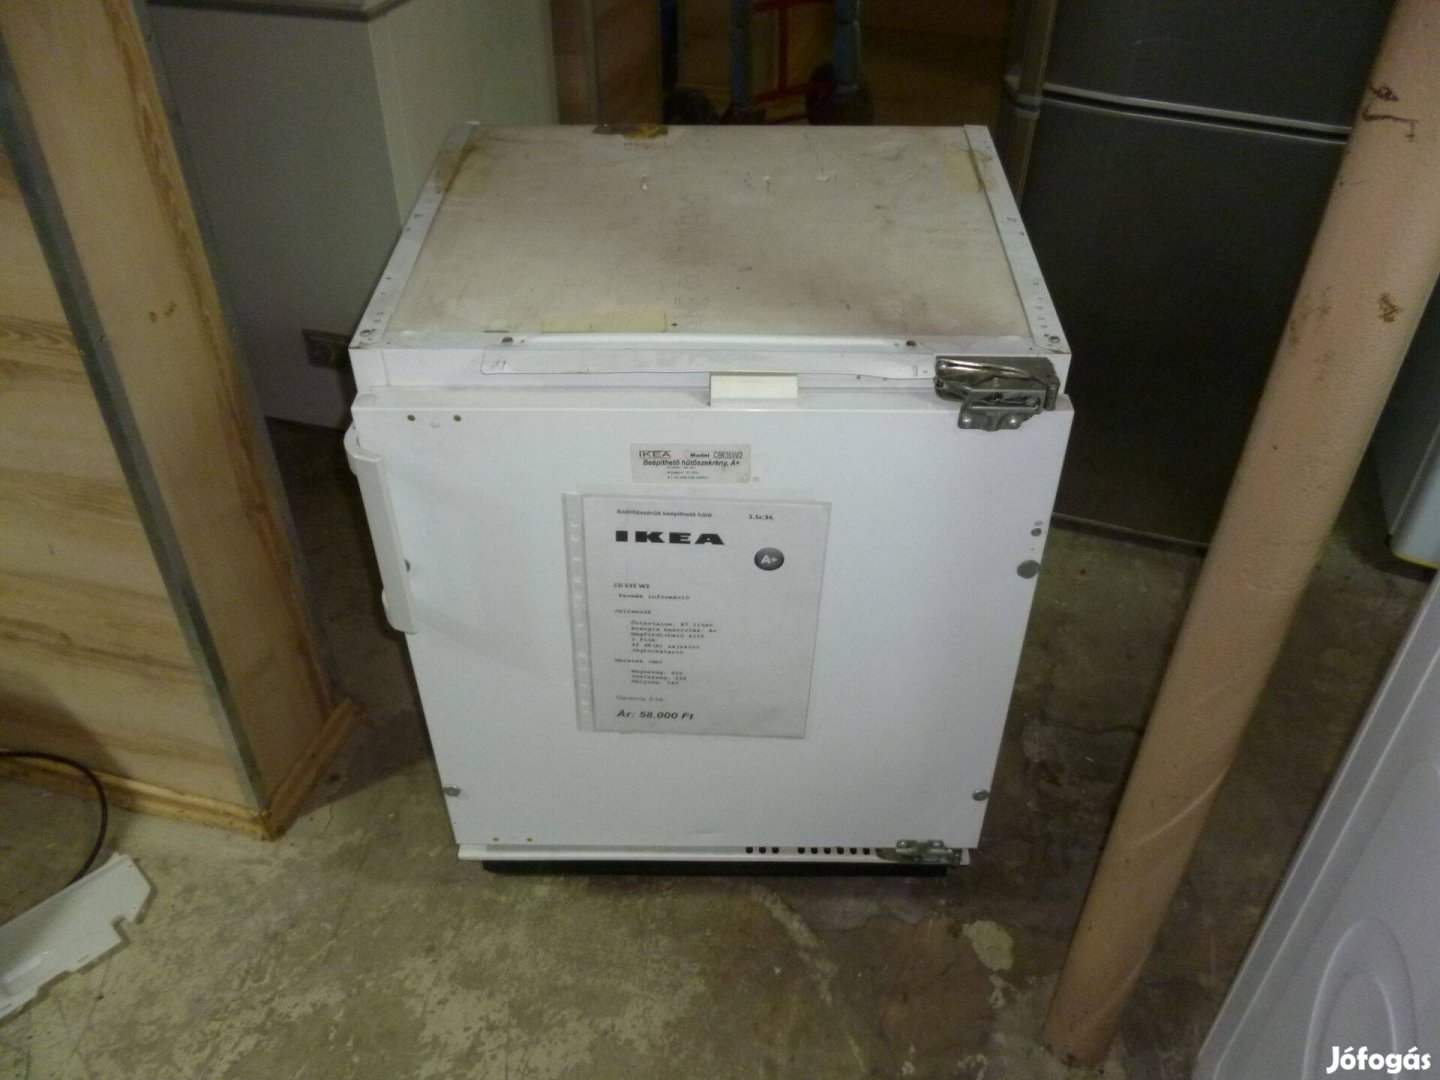 Használt beépíthető hűtő